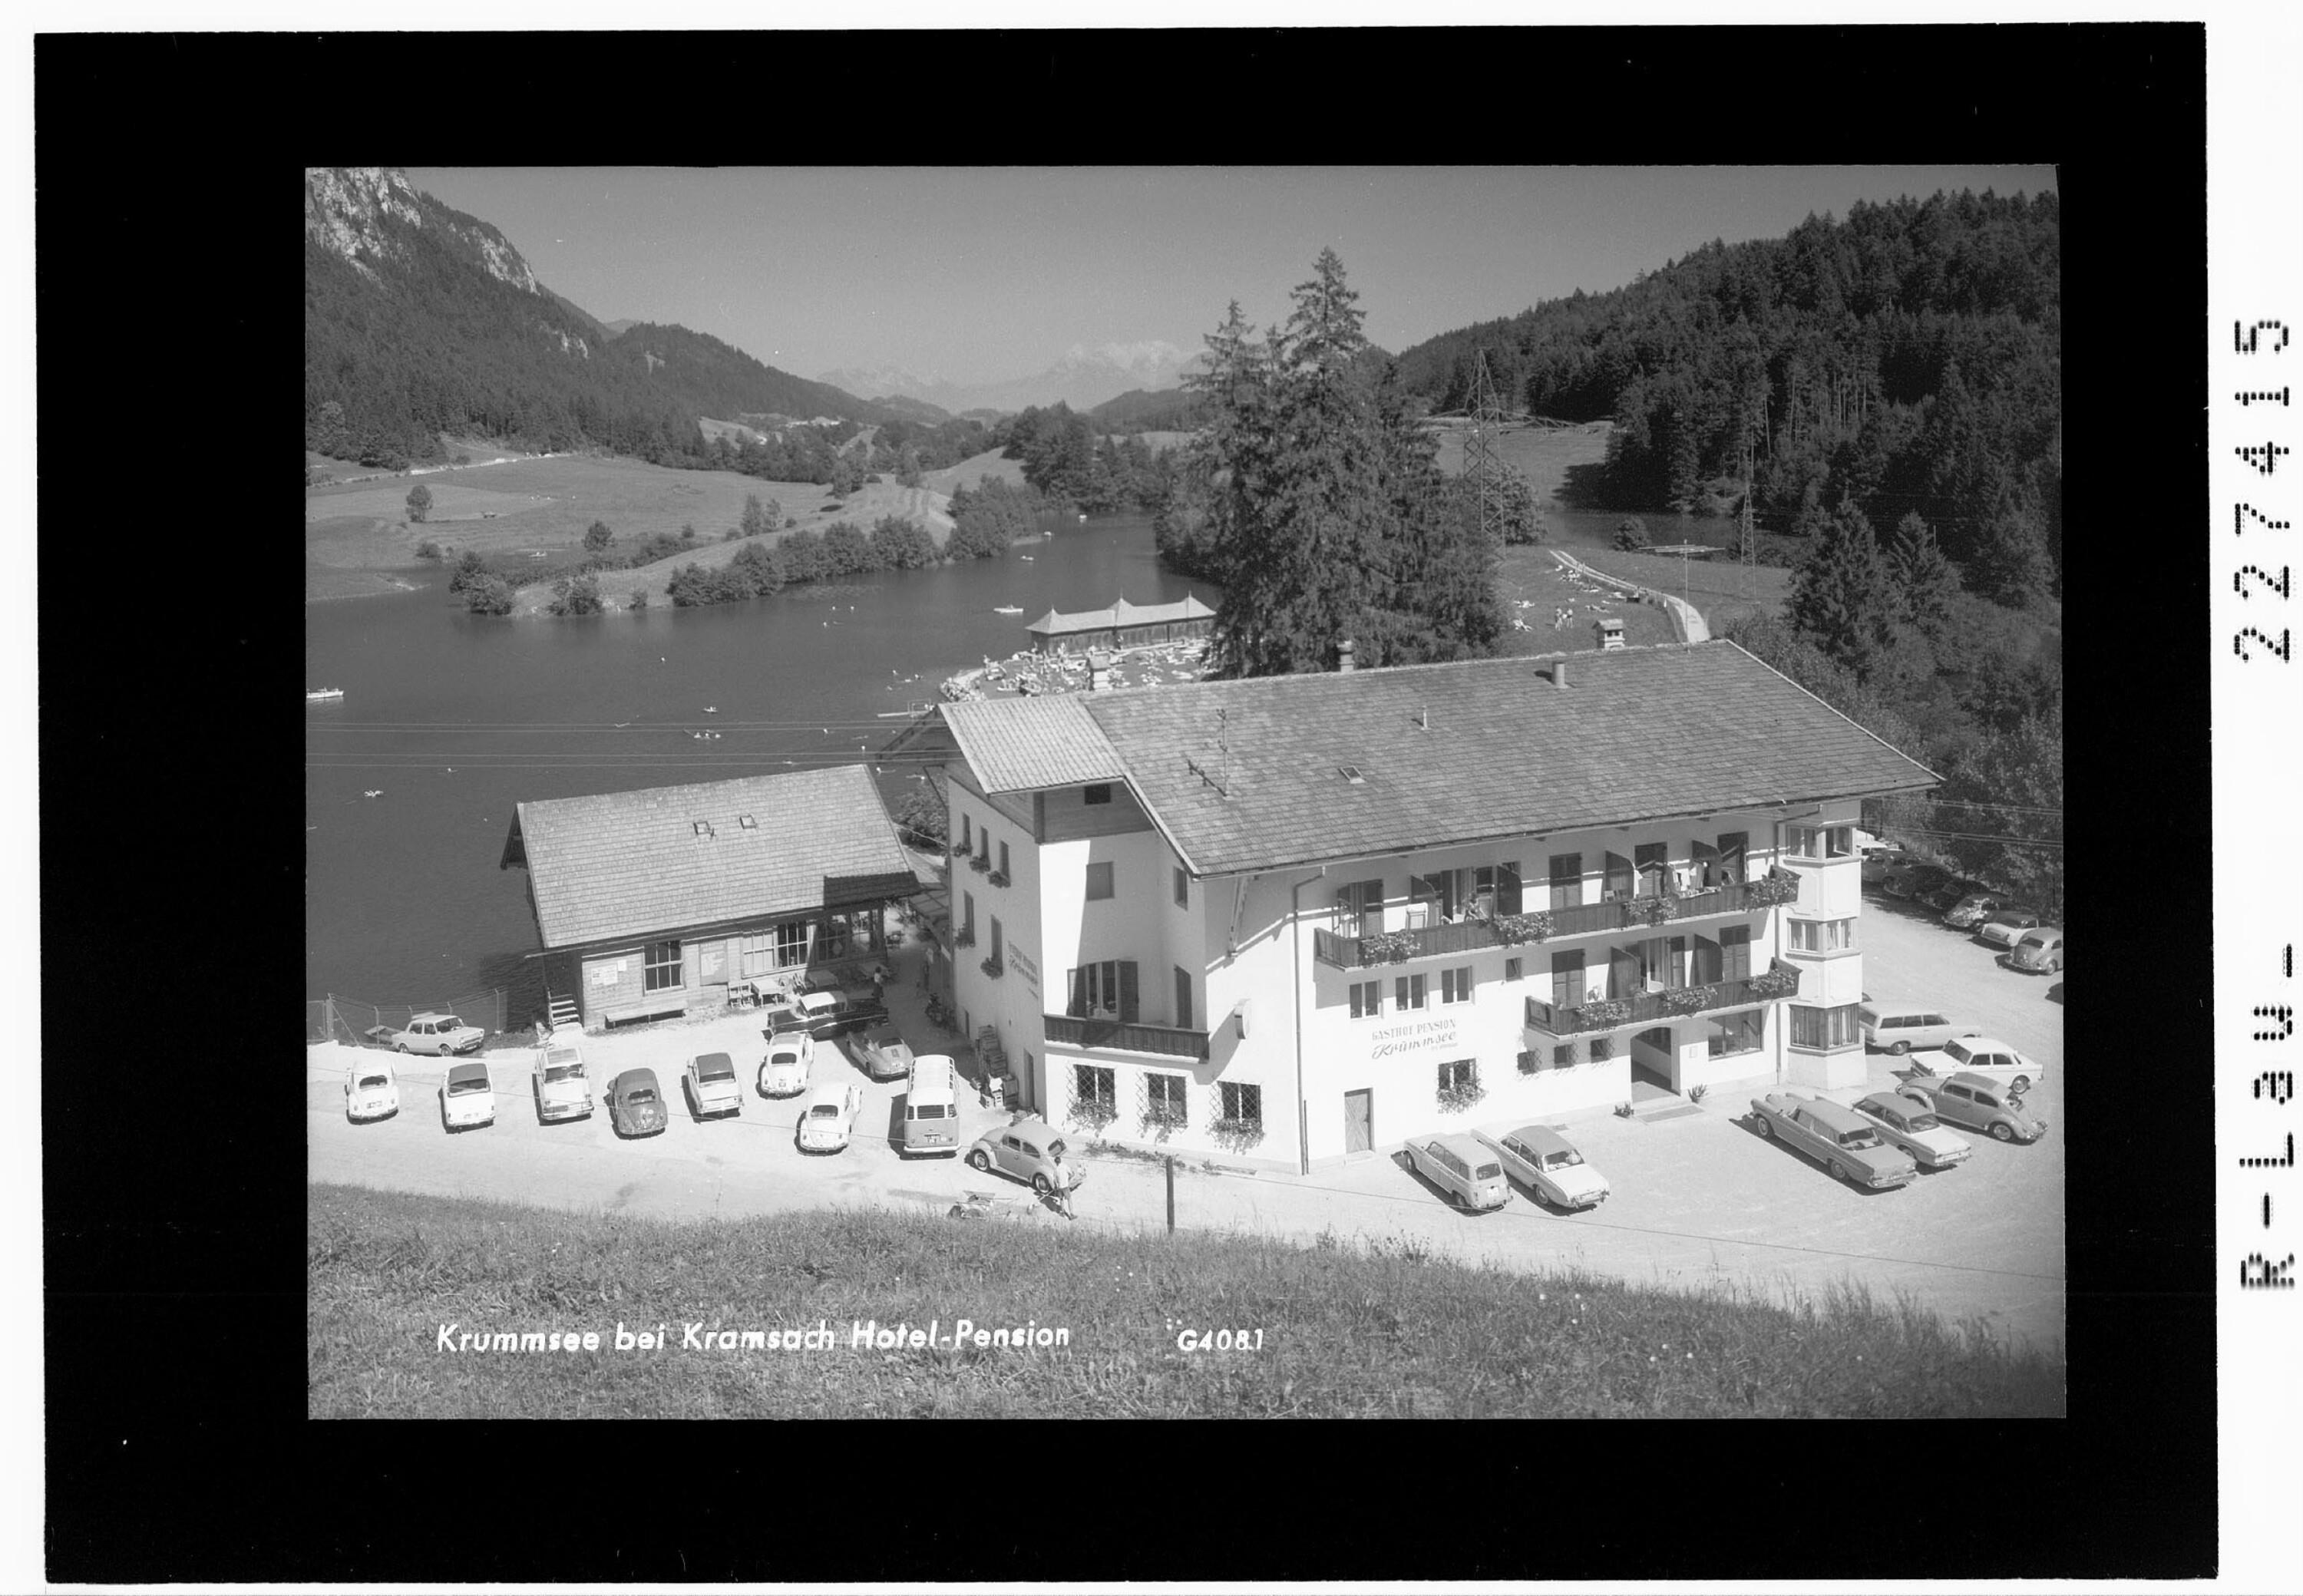 Krummsee bei Kramsach / Hotel - Pension></div>


    <hr>
    <div class=